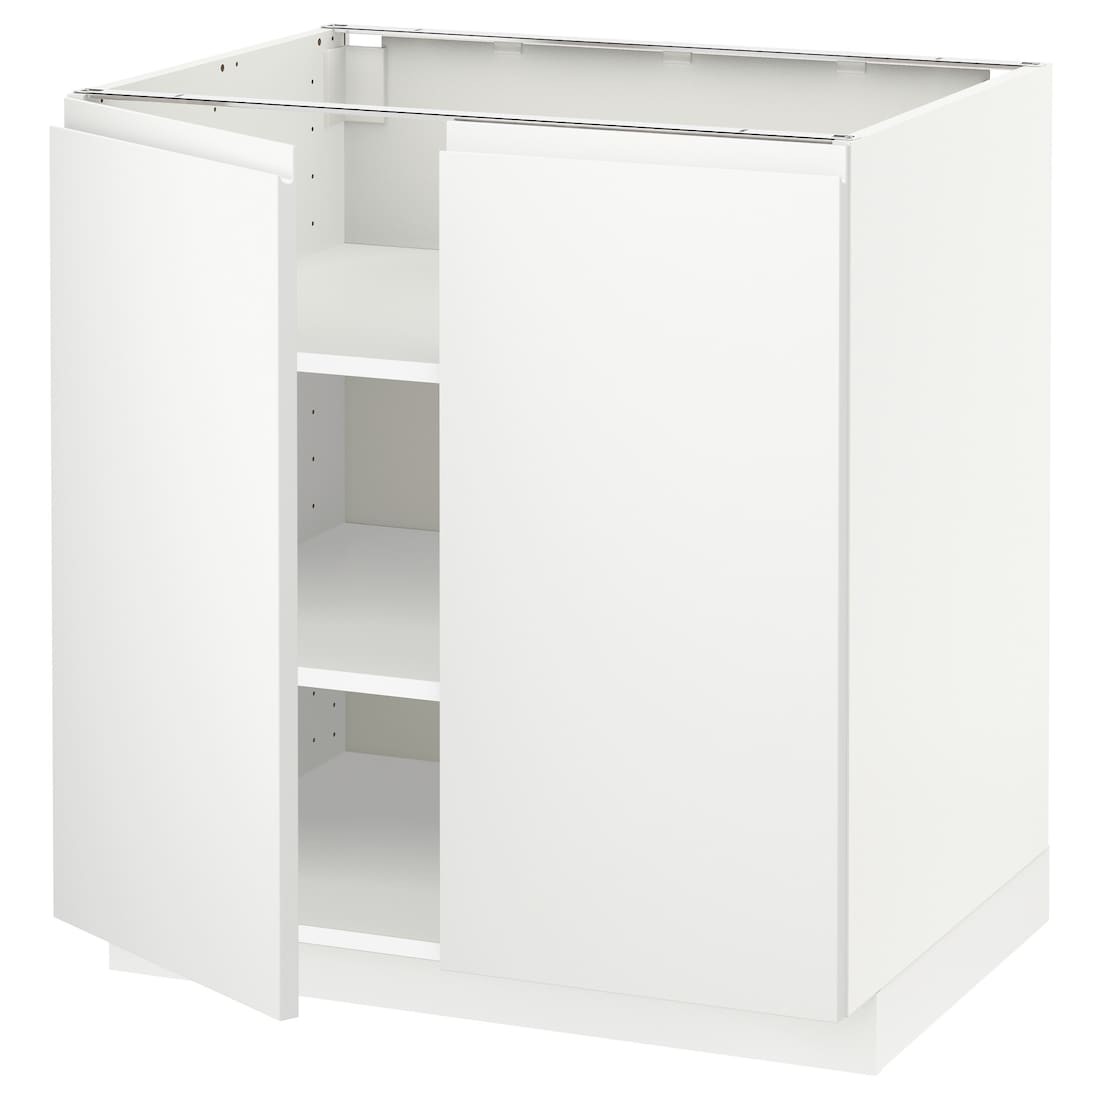 IKEA METOD МЕТОД Шафа з полицями / 2 дверей, білий / Voxtorp матовий білий, 80x60 см 99456185 994.561.85